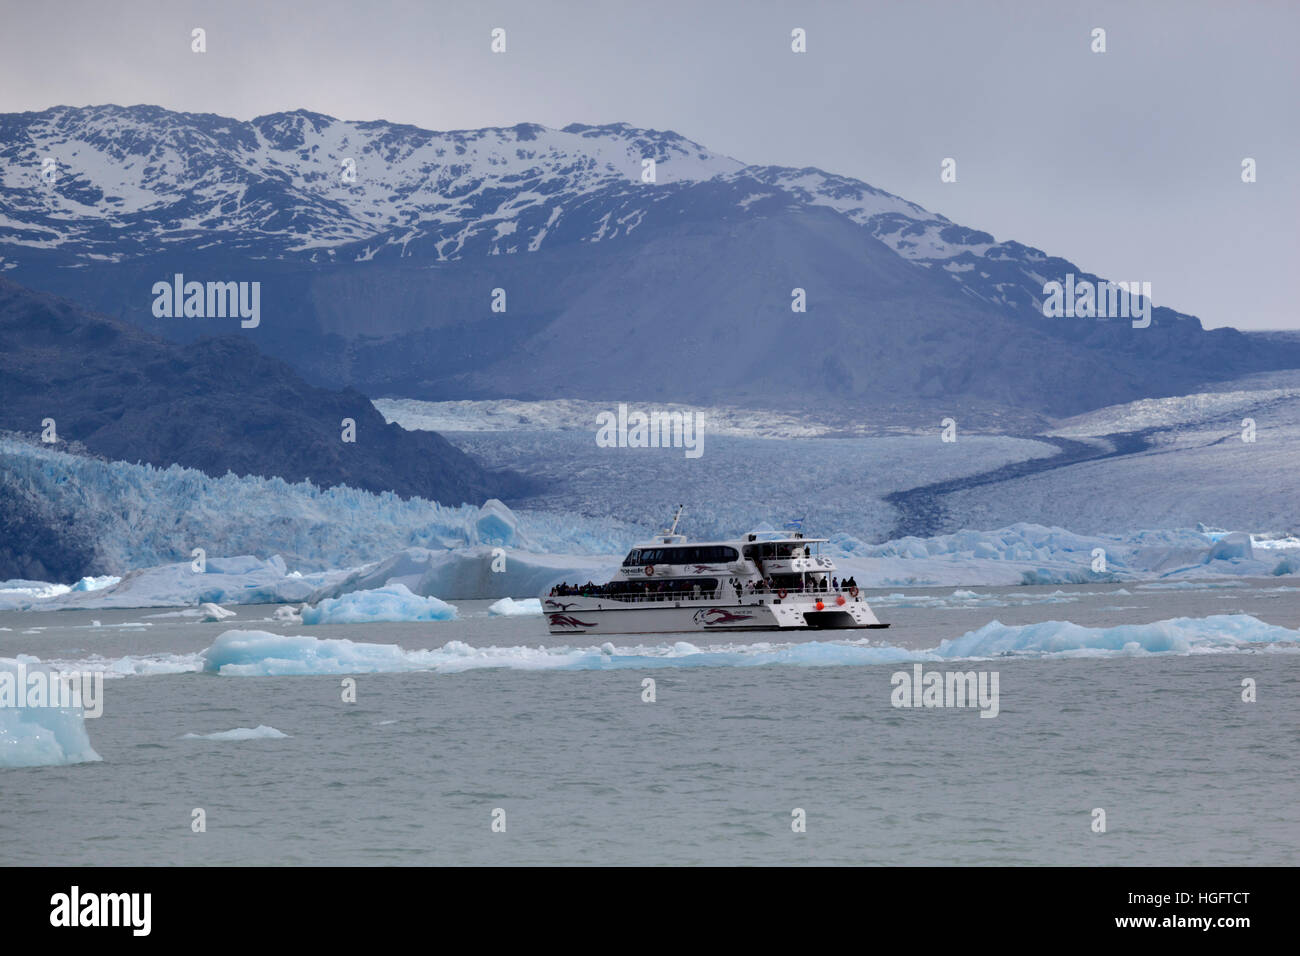 Sightseeing Boot am Upsala Gletscher am Lago Argentino, El Calafate, Parque Nacional Los Glaciares, Patagonien, Argentinien, Südamerika Stockfoto